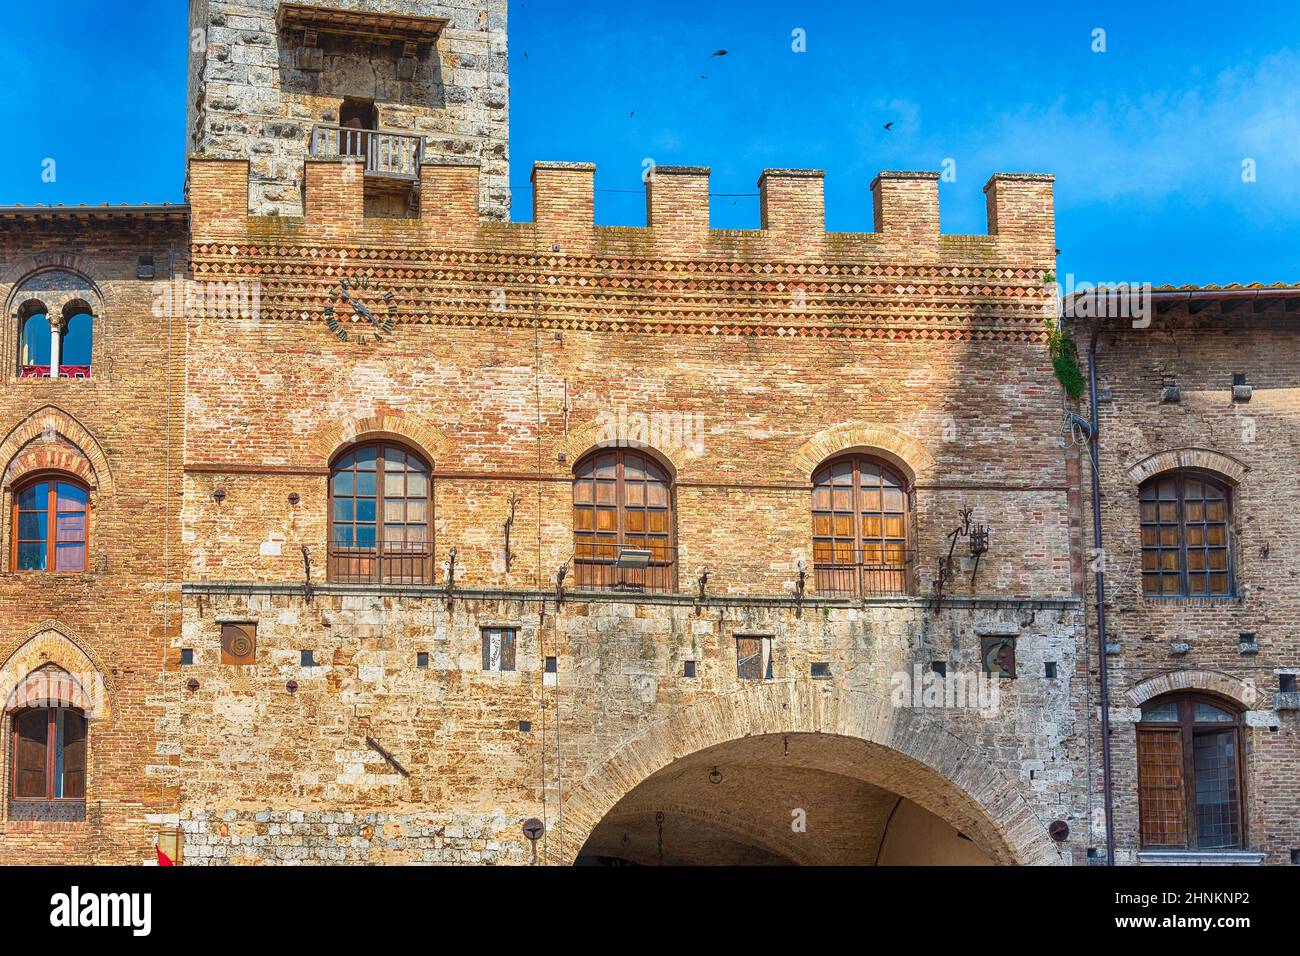 Die mittelalterliche Architektur von San Gimignano, einer ikonischen Stadt in Italien Stockfoto